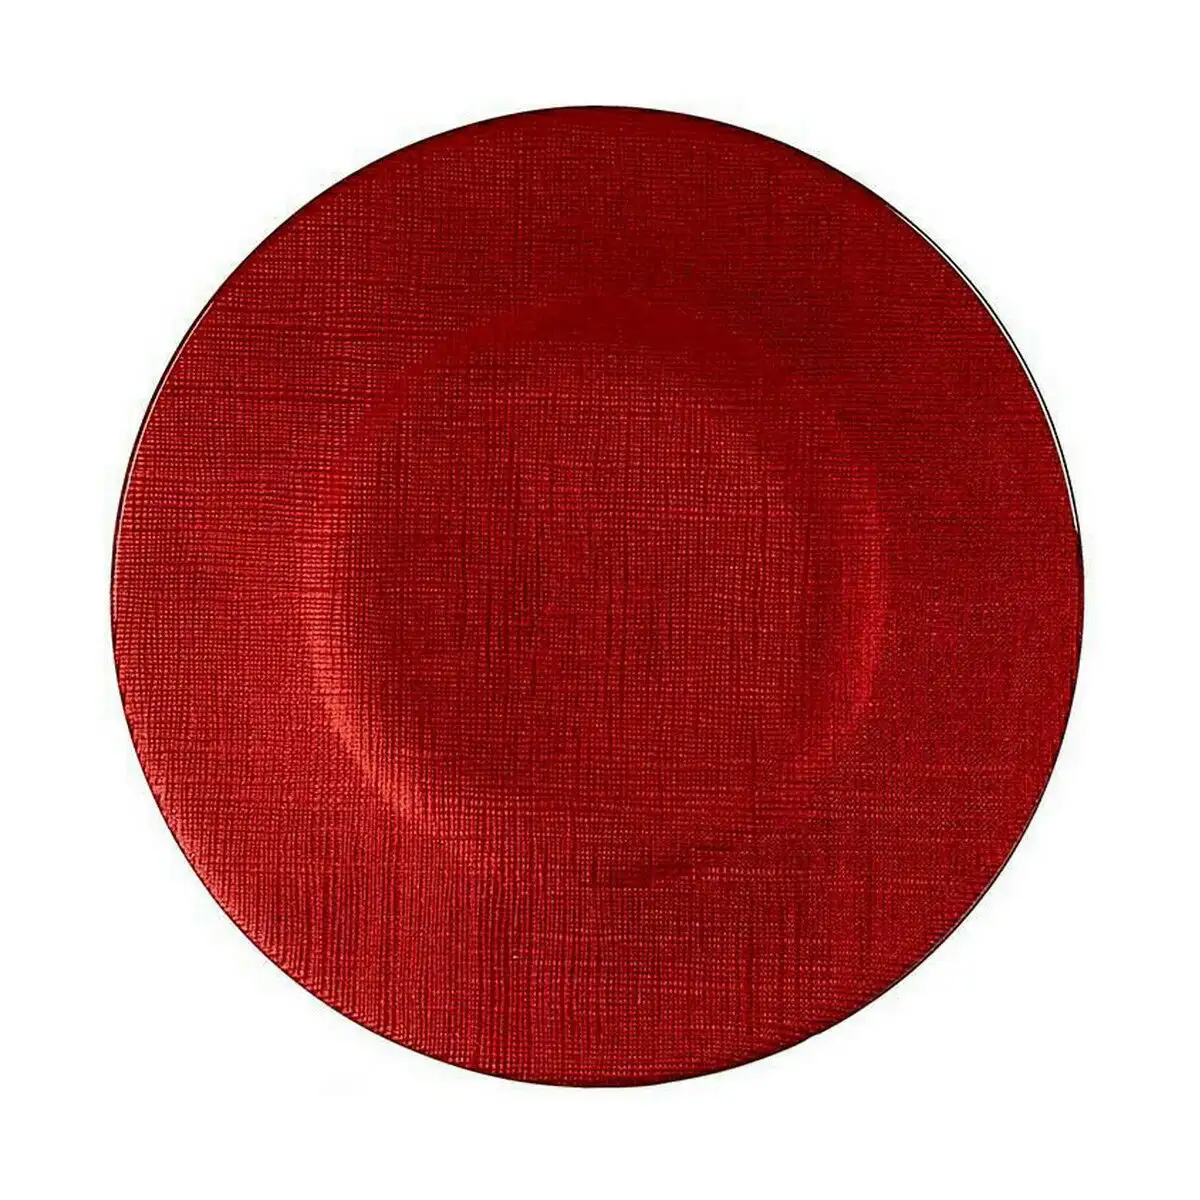 Assiette plate rouge verre 6 unites 21 x 2 x 21 cm _4967. Bienvenue sur DIAYTAR SENEGAL - Où Chaque Détail compte. Plongez dans notre univers et choisissez des produits qui ajoutent de l'éclat et de la joie à votre quotidien.